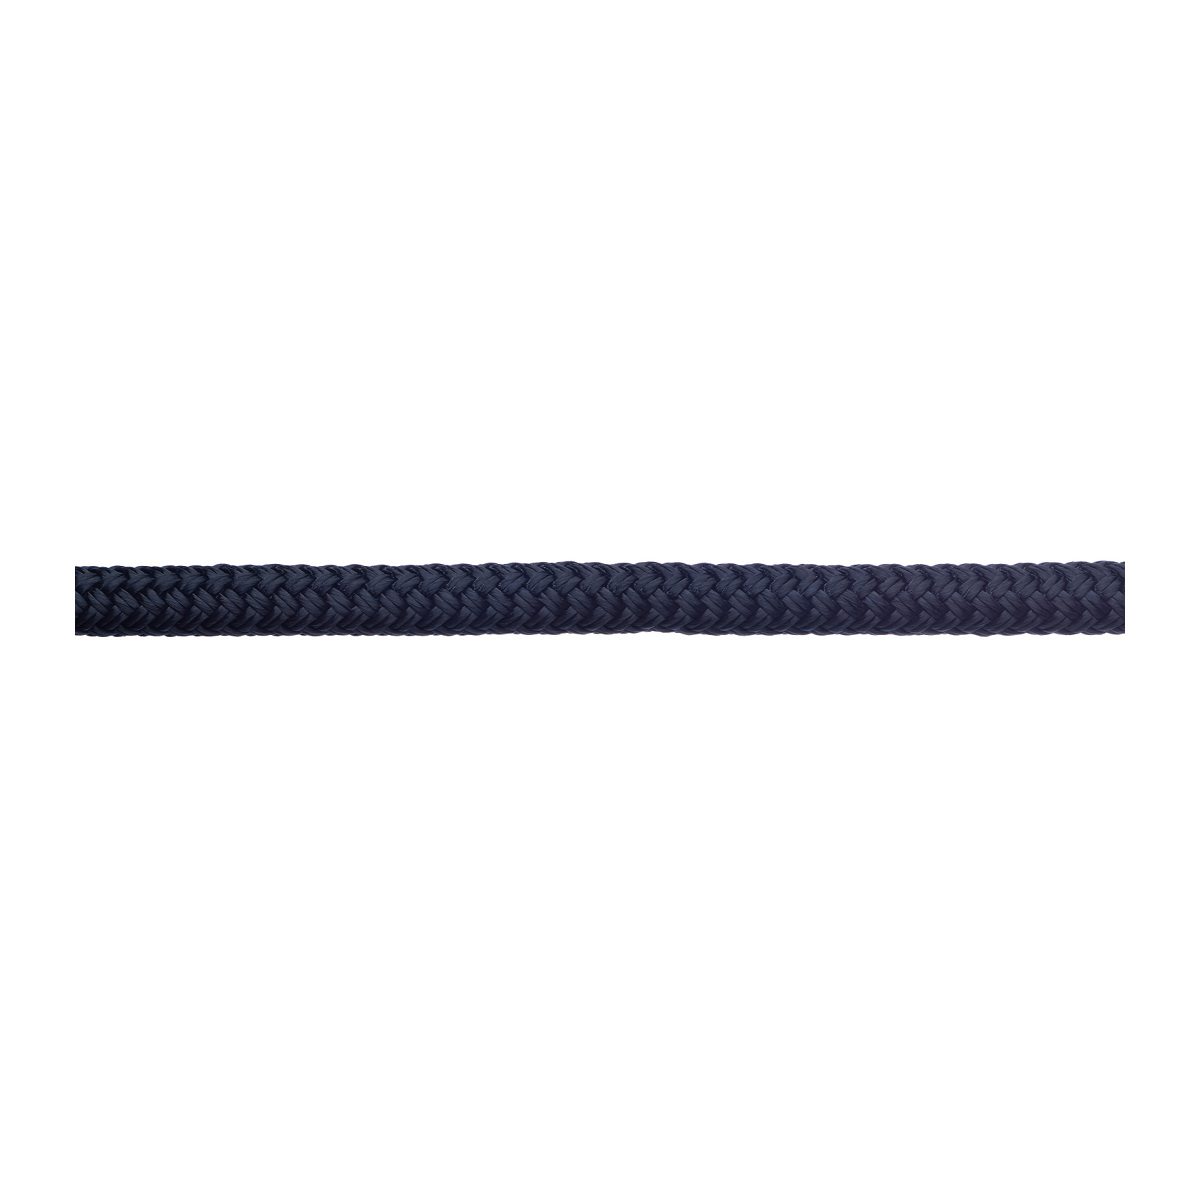 Robline amarre Rio 12mm longueur 10m navy/bleu